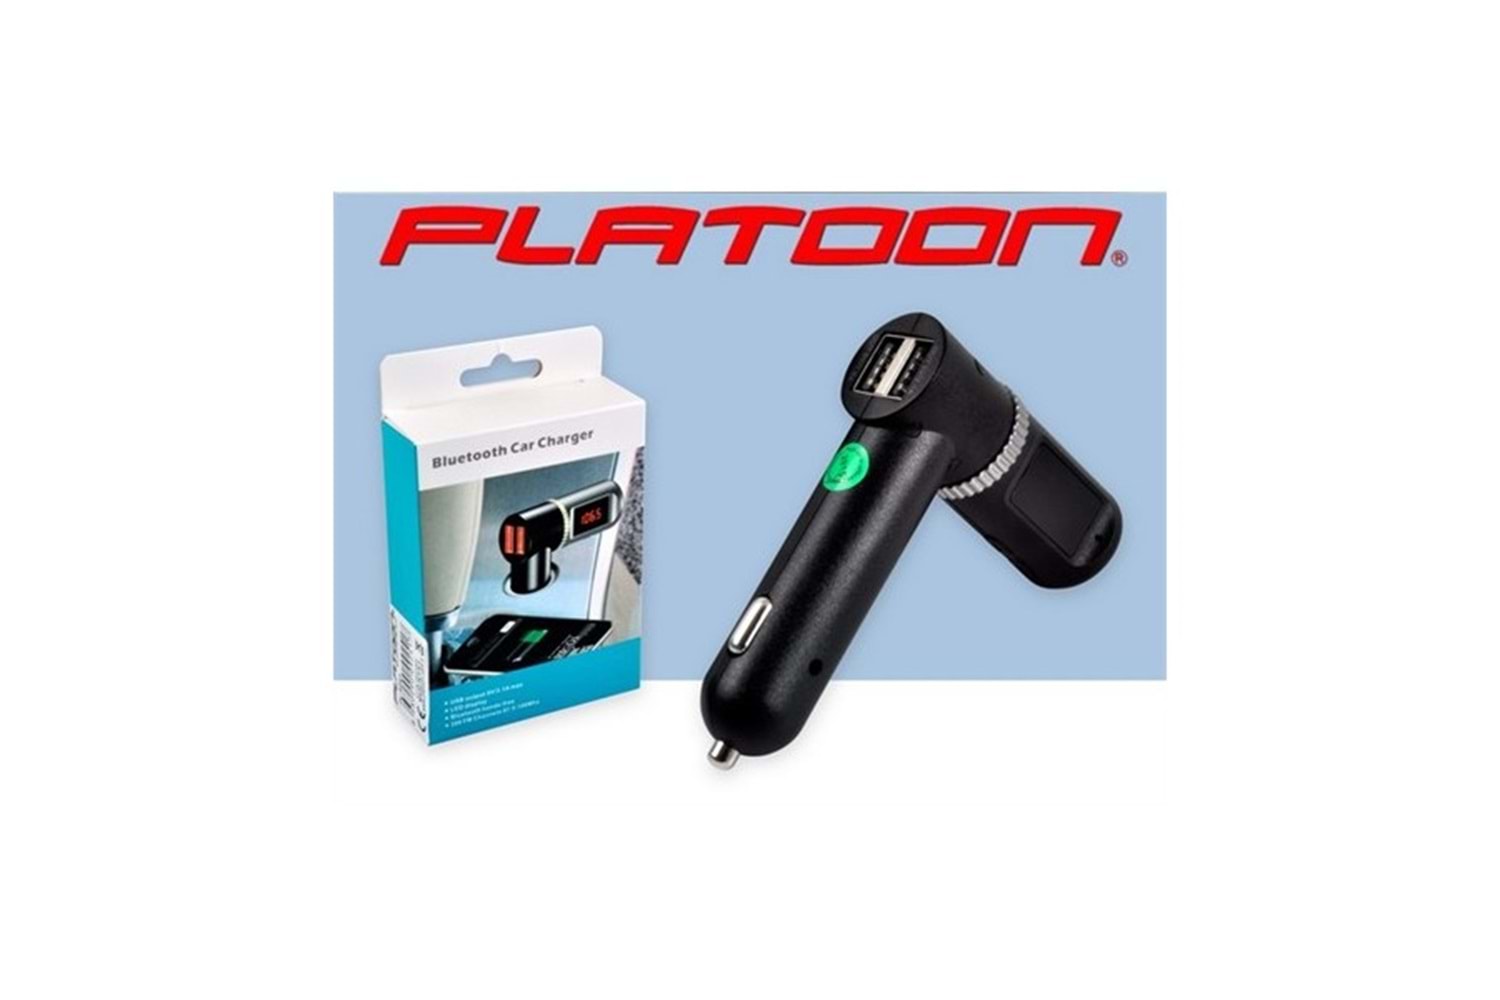 PLATOON PL-9241 1.8 TFT BLUETOOTH FM TRANSMITTER SD/USB